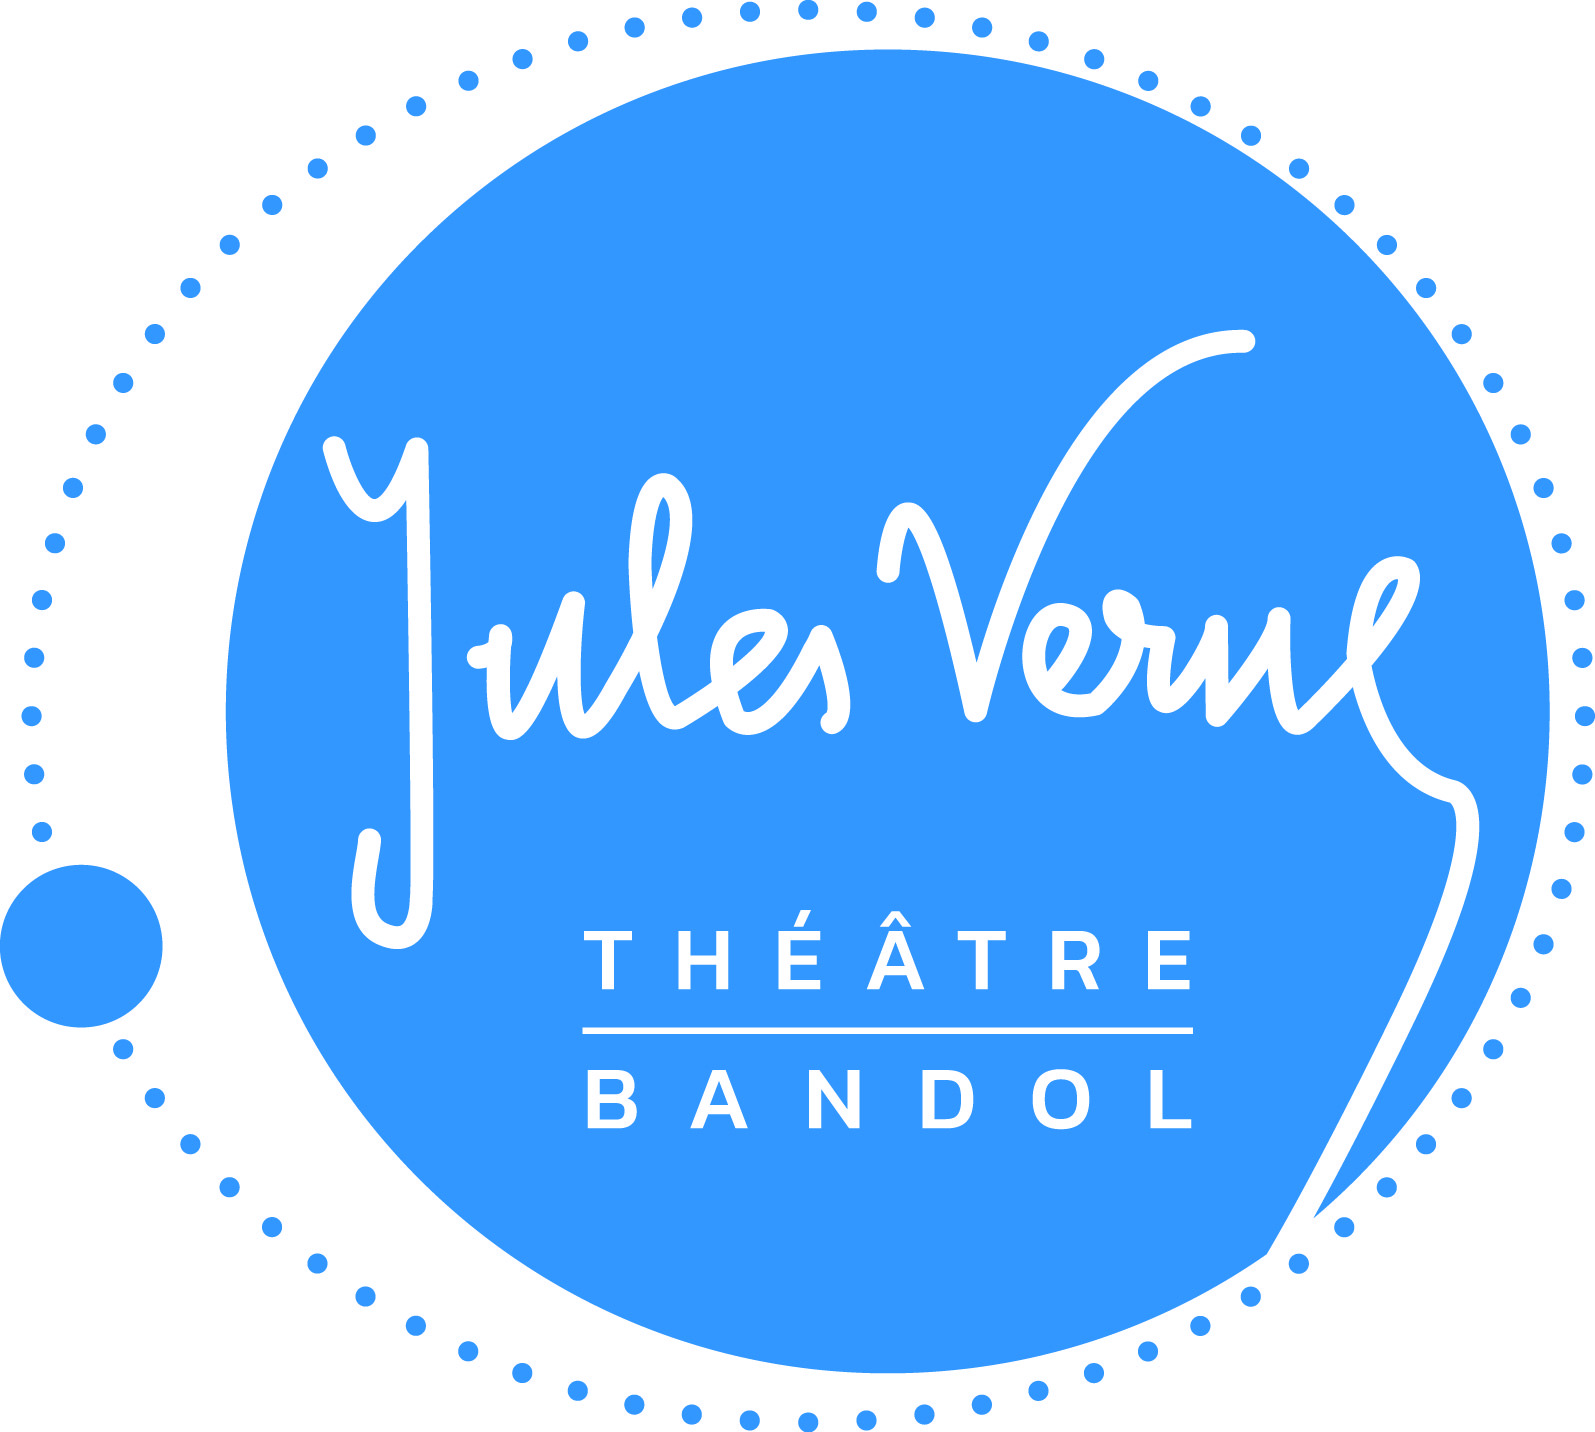 Théâtre Jules Verne - Bandol